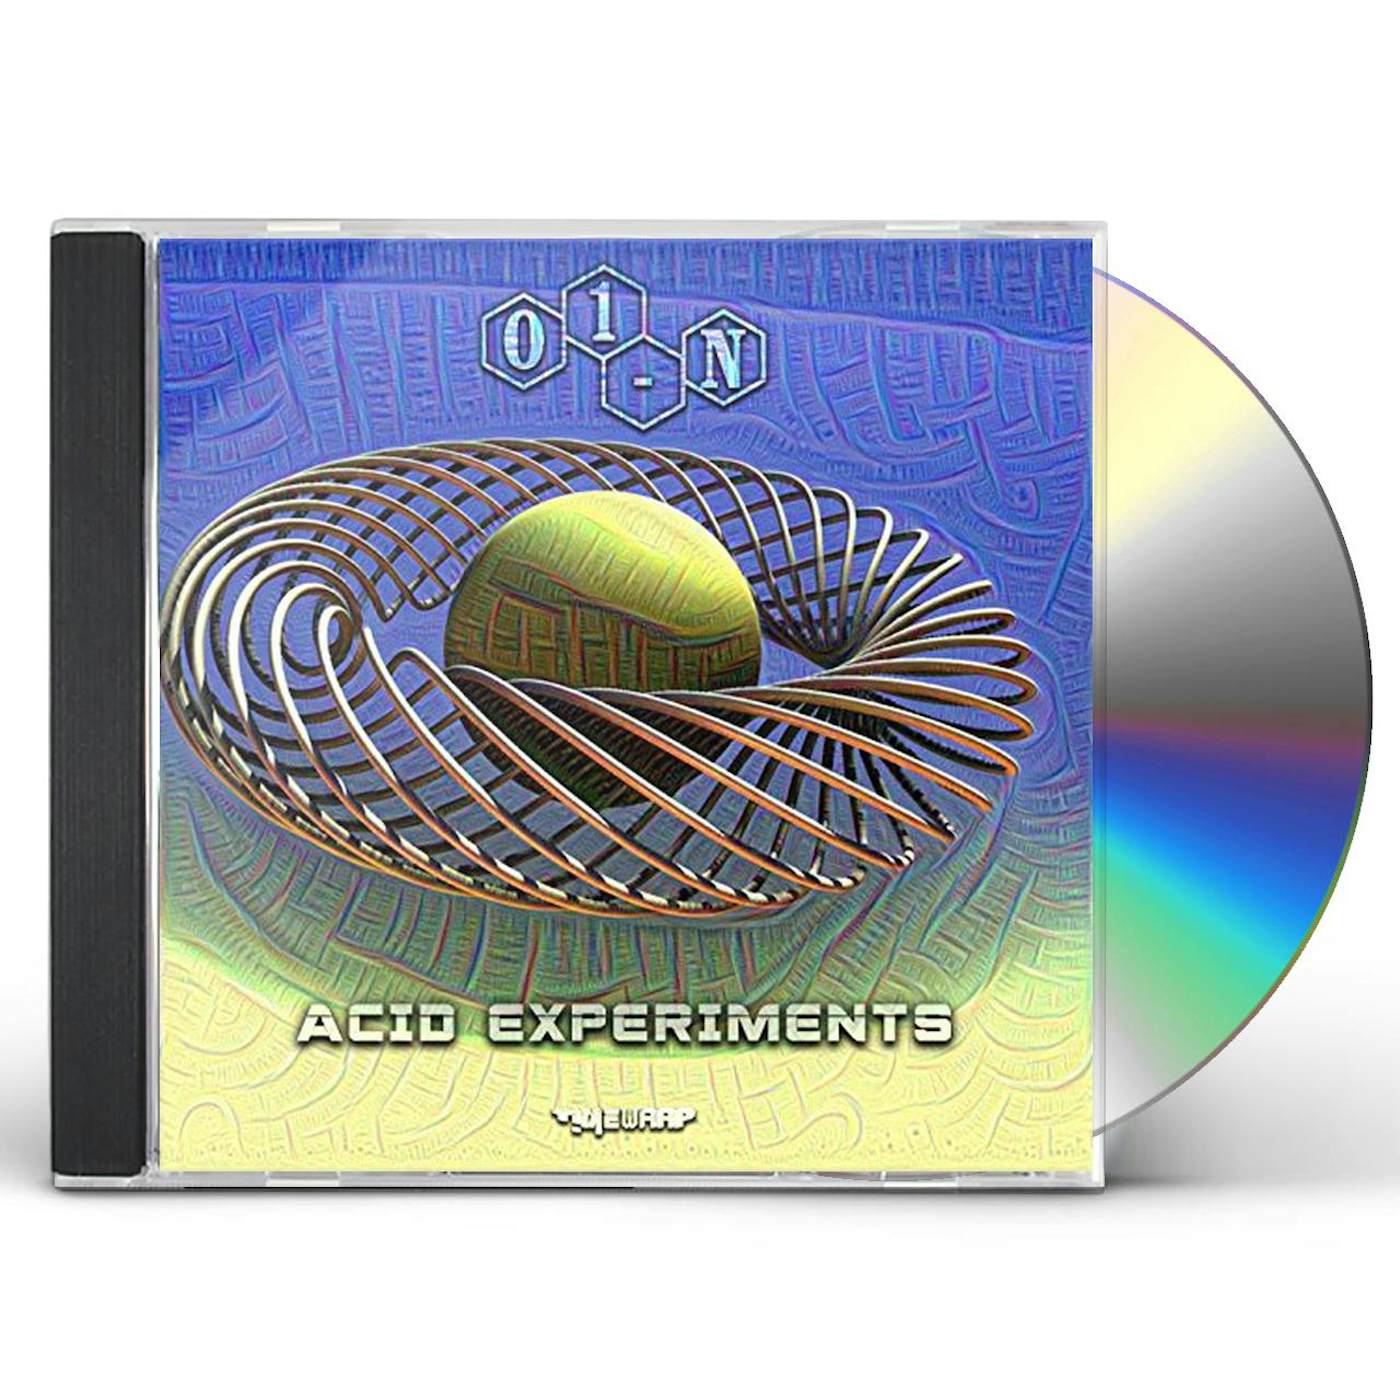 01-N ACID EXPERIMENT CD